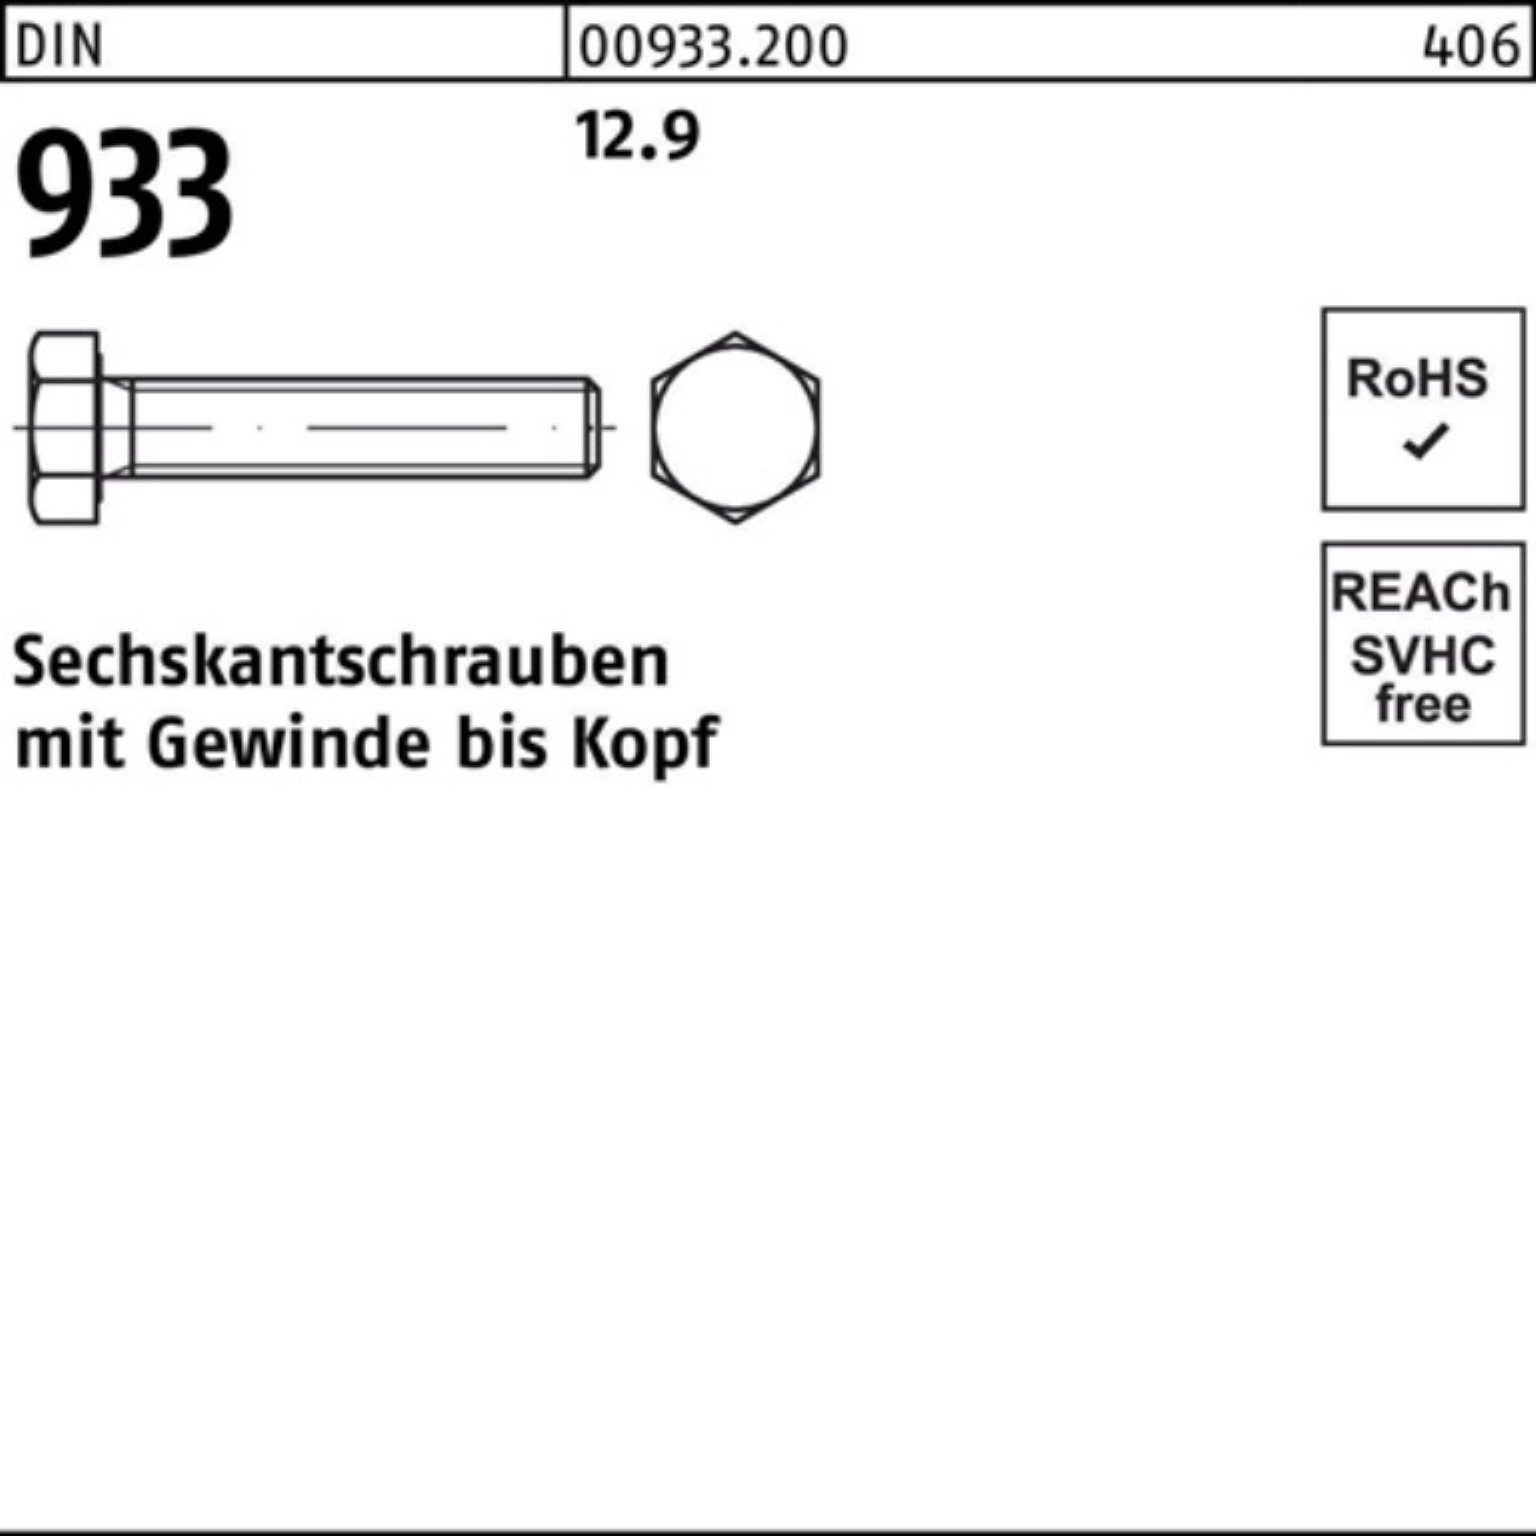 200 VG Pack 933 Sechskantschraube 933 12.9 M8x Reyher DIN DIN 200er Sechskantschraube Stück 25